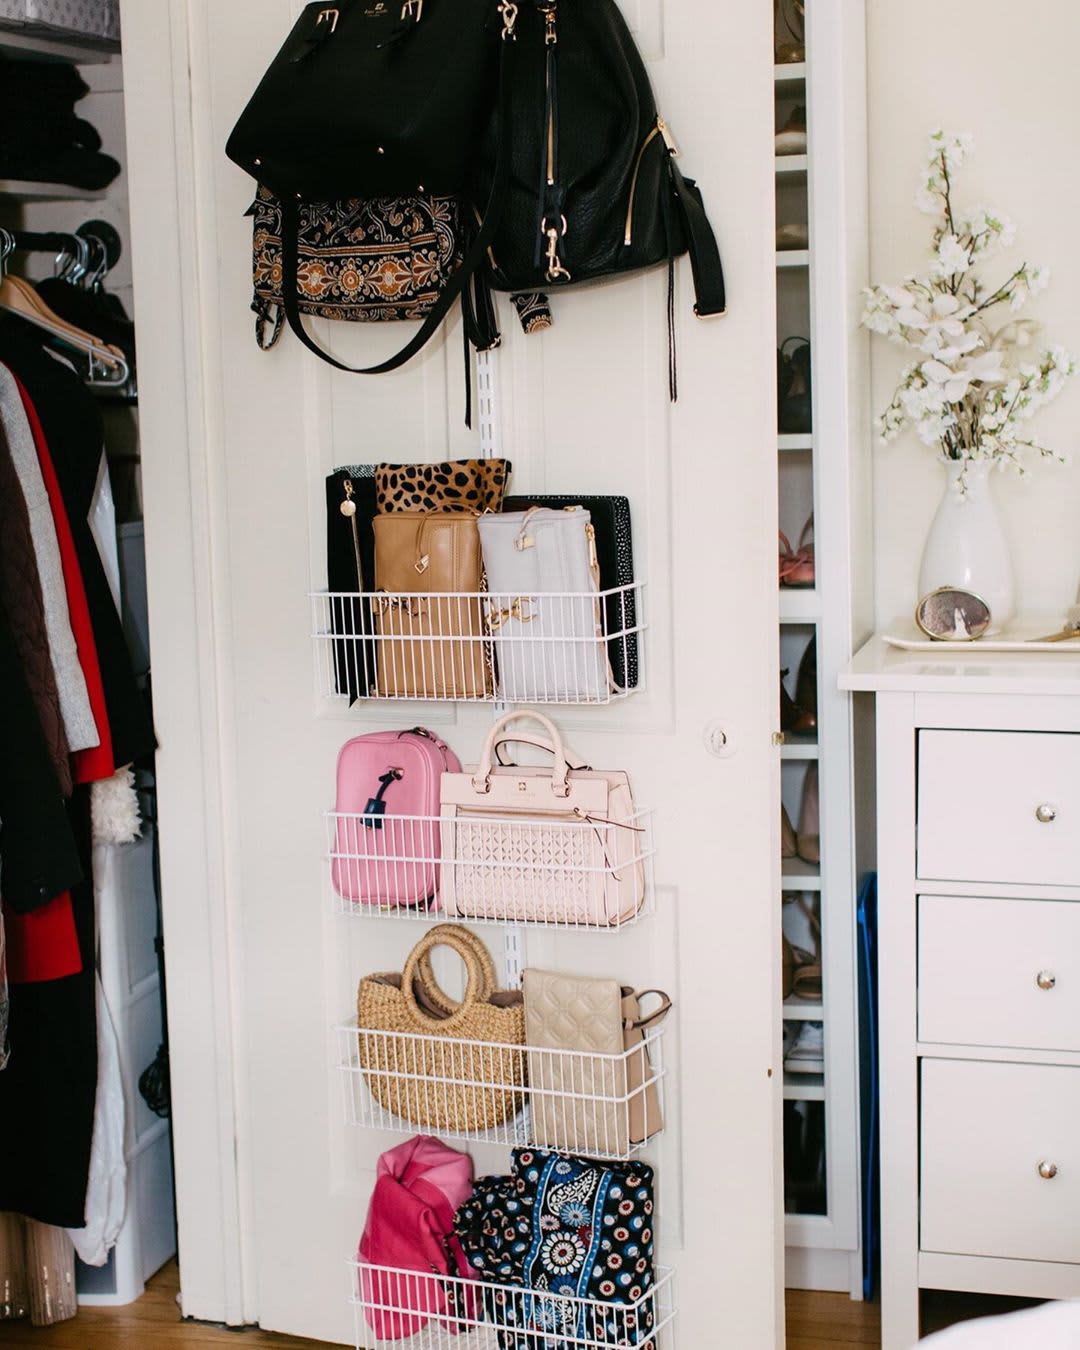 How To Organize Purses In Closet / Bedroom Diy Bag Organizer Novocom ...